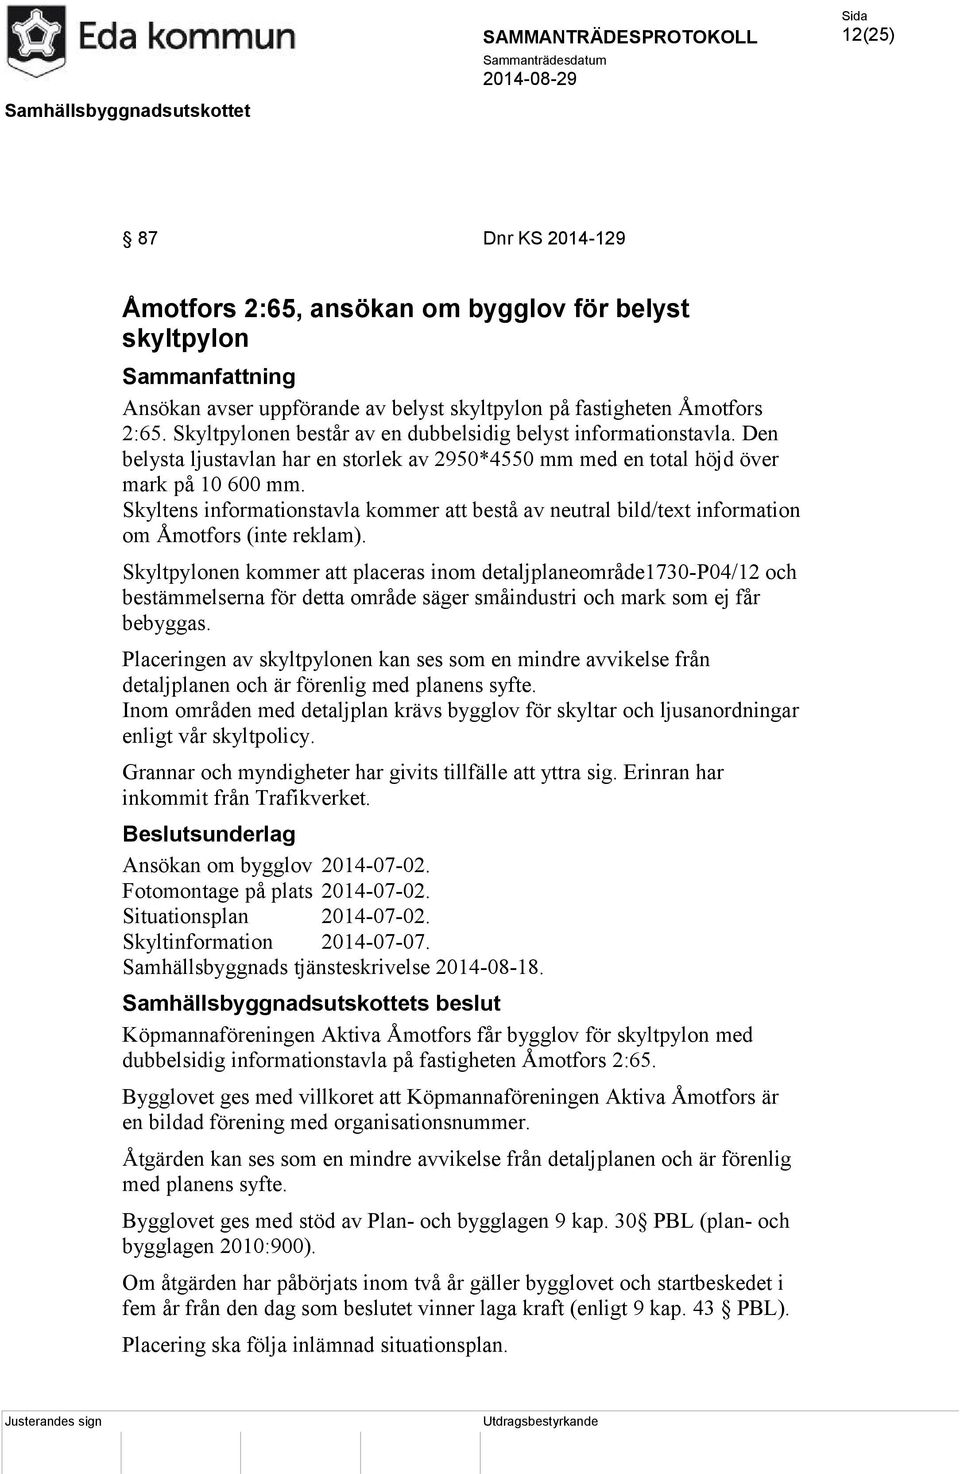 Skyltens informationstavla kommer att bestå av neutral bild/text information om Åmotfors (inte reklam).